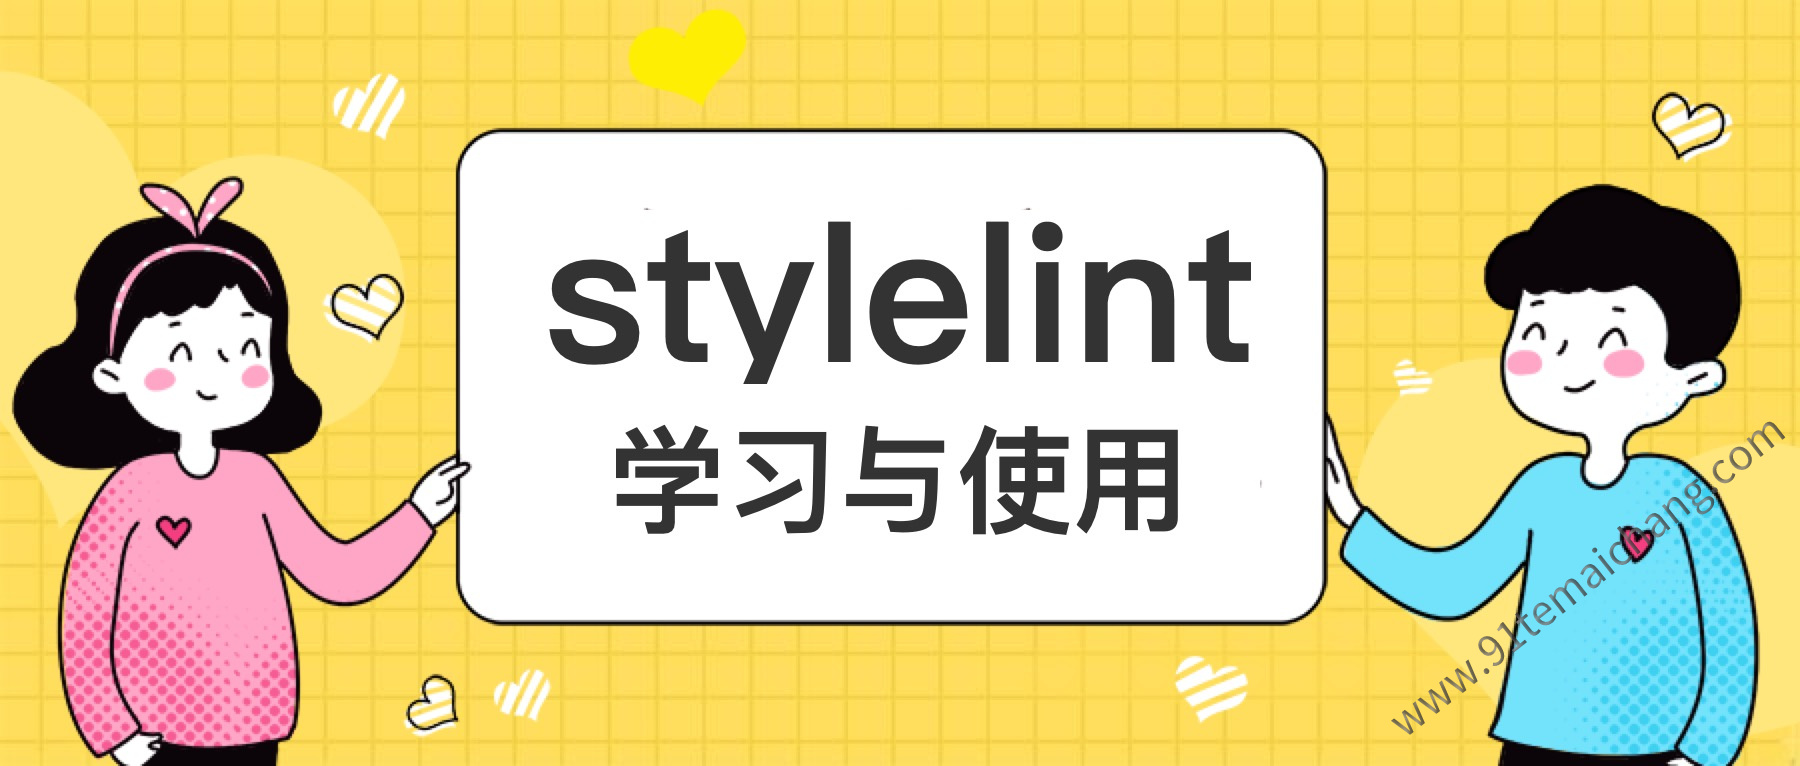 如何使用stylelint